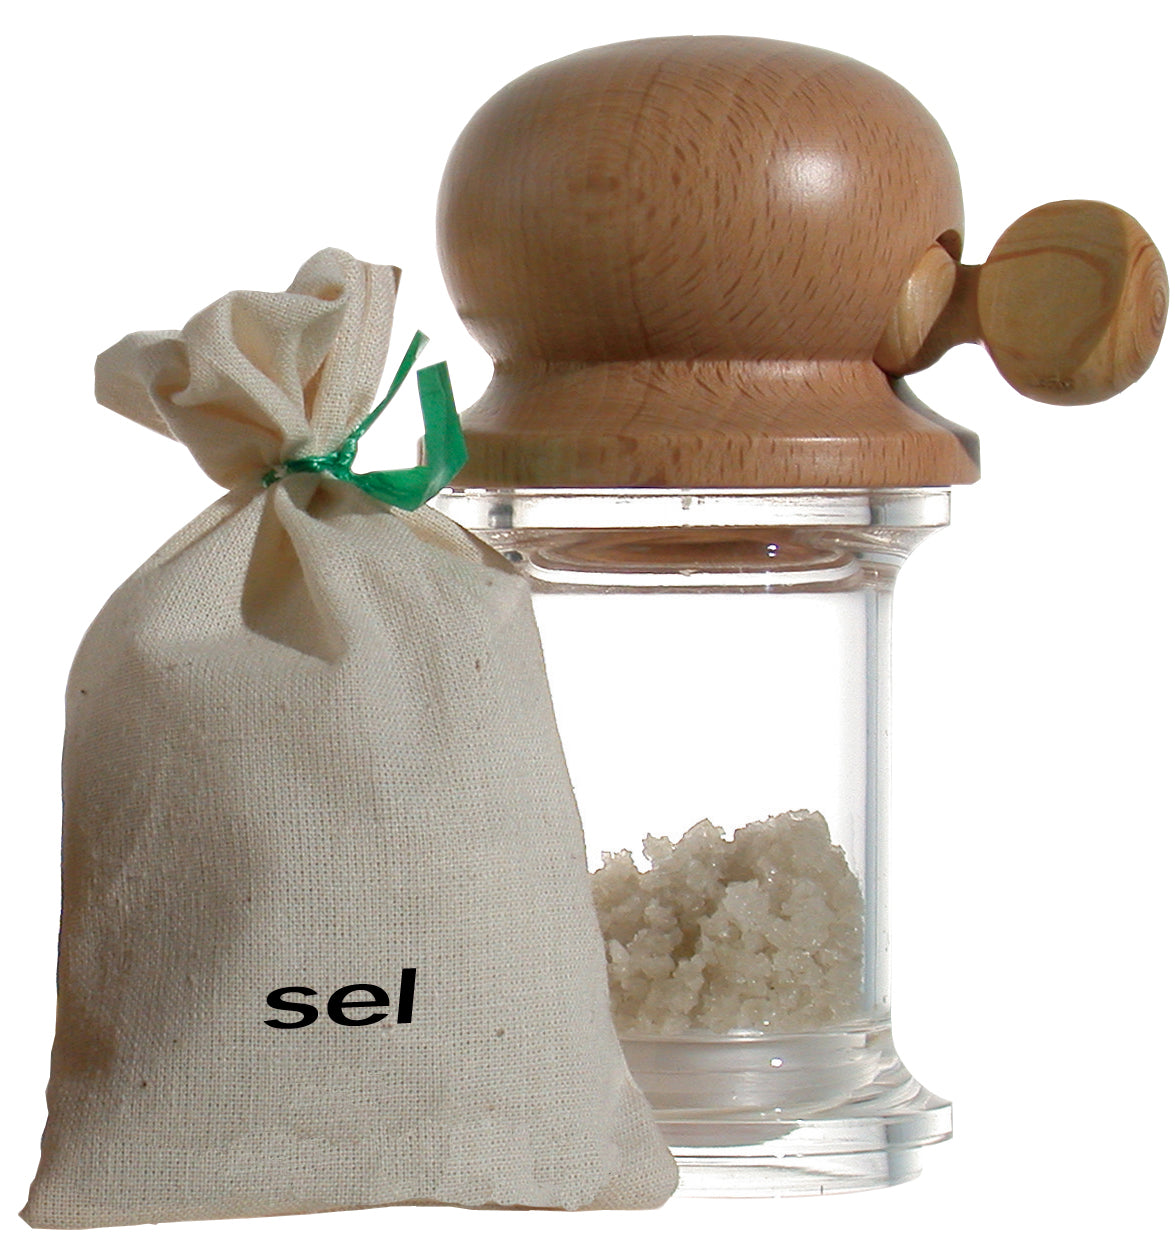 De Buyer sea-salt mill